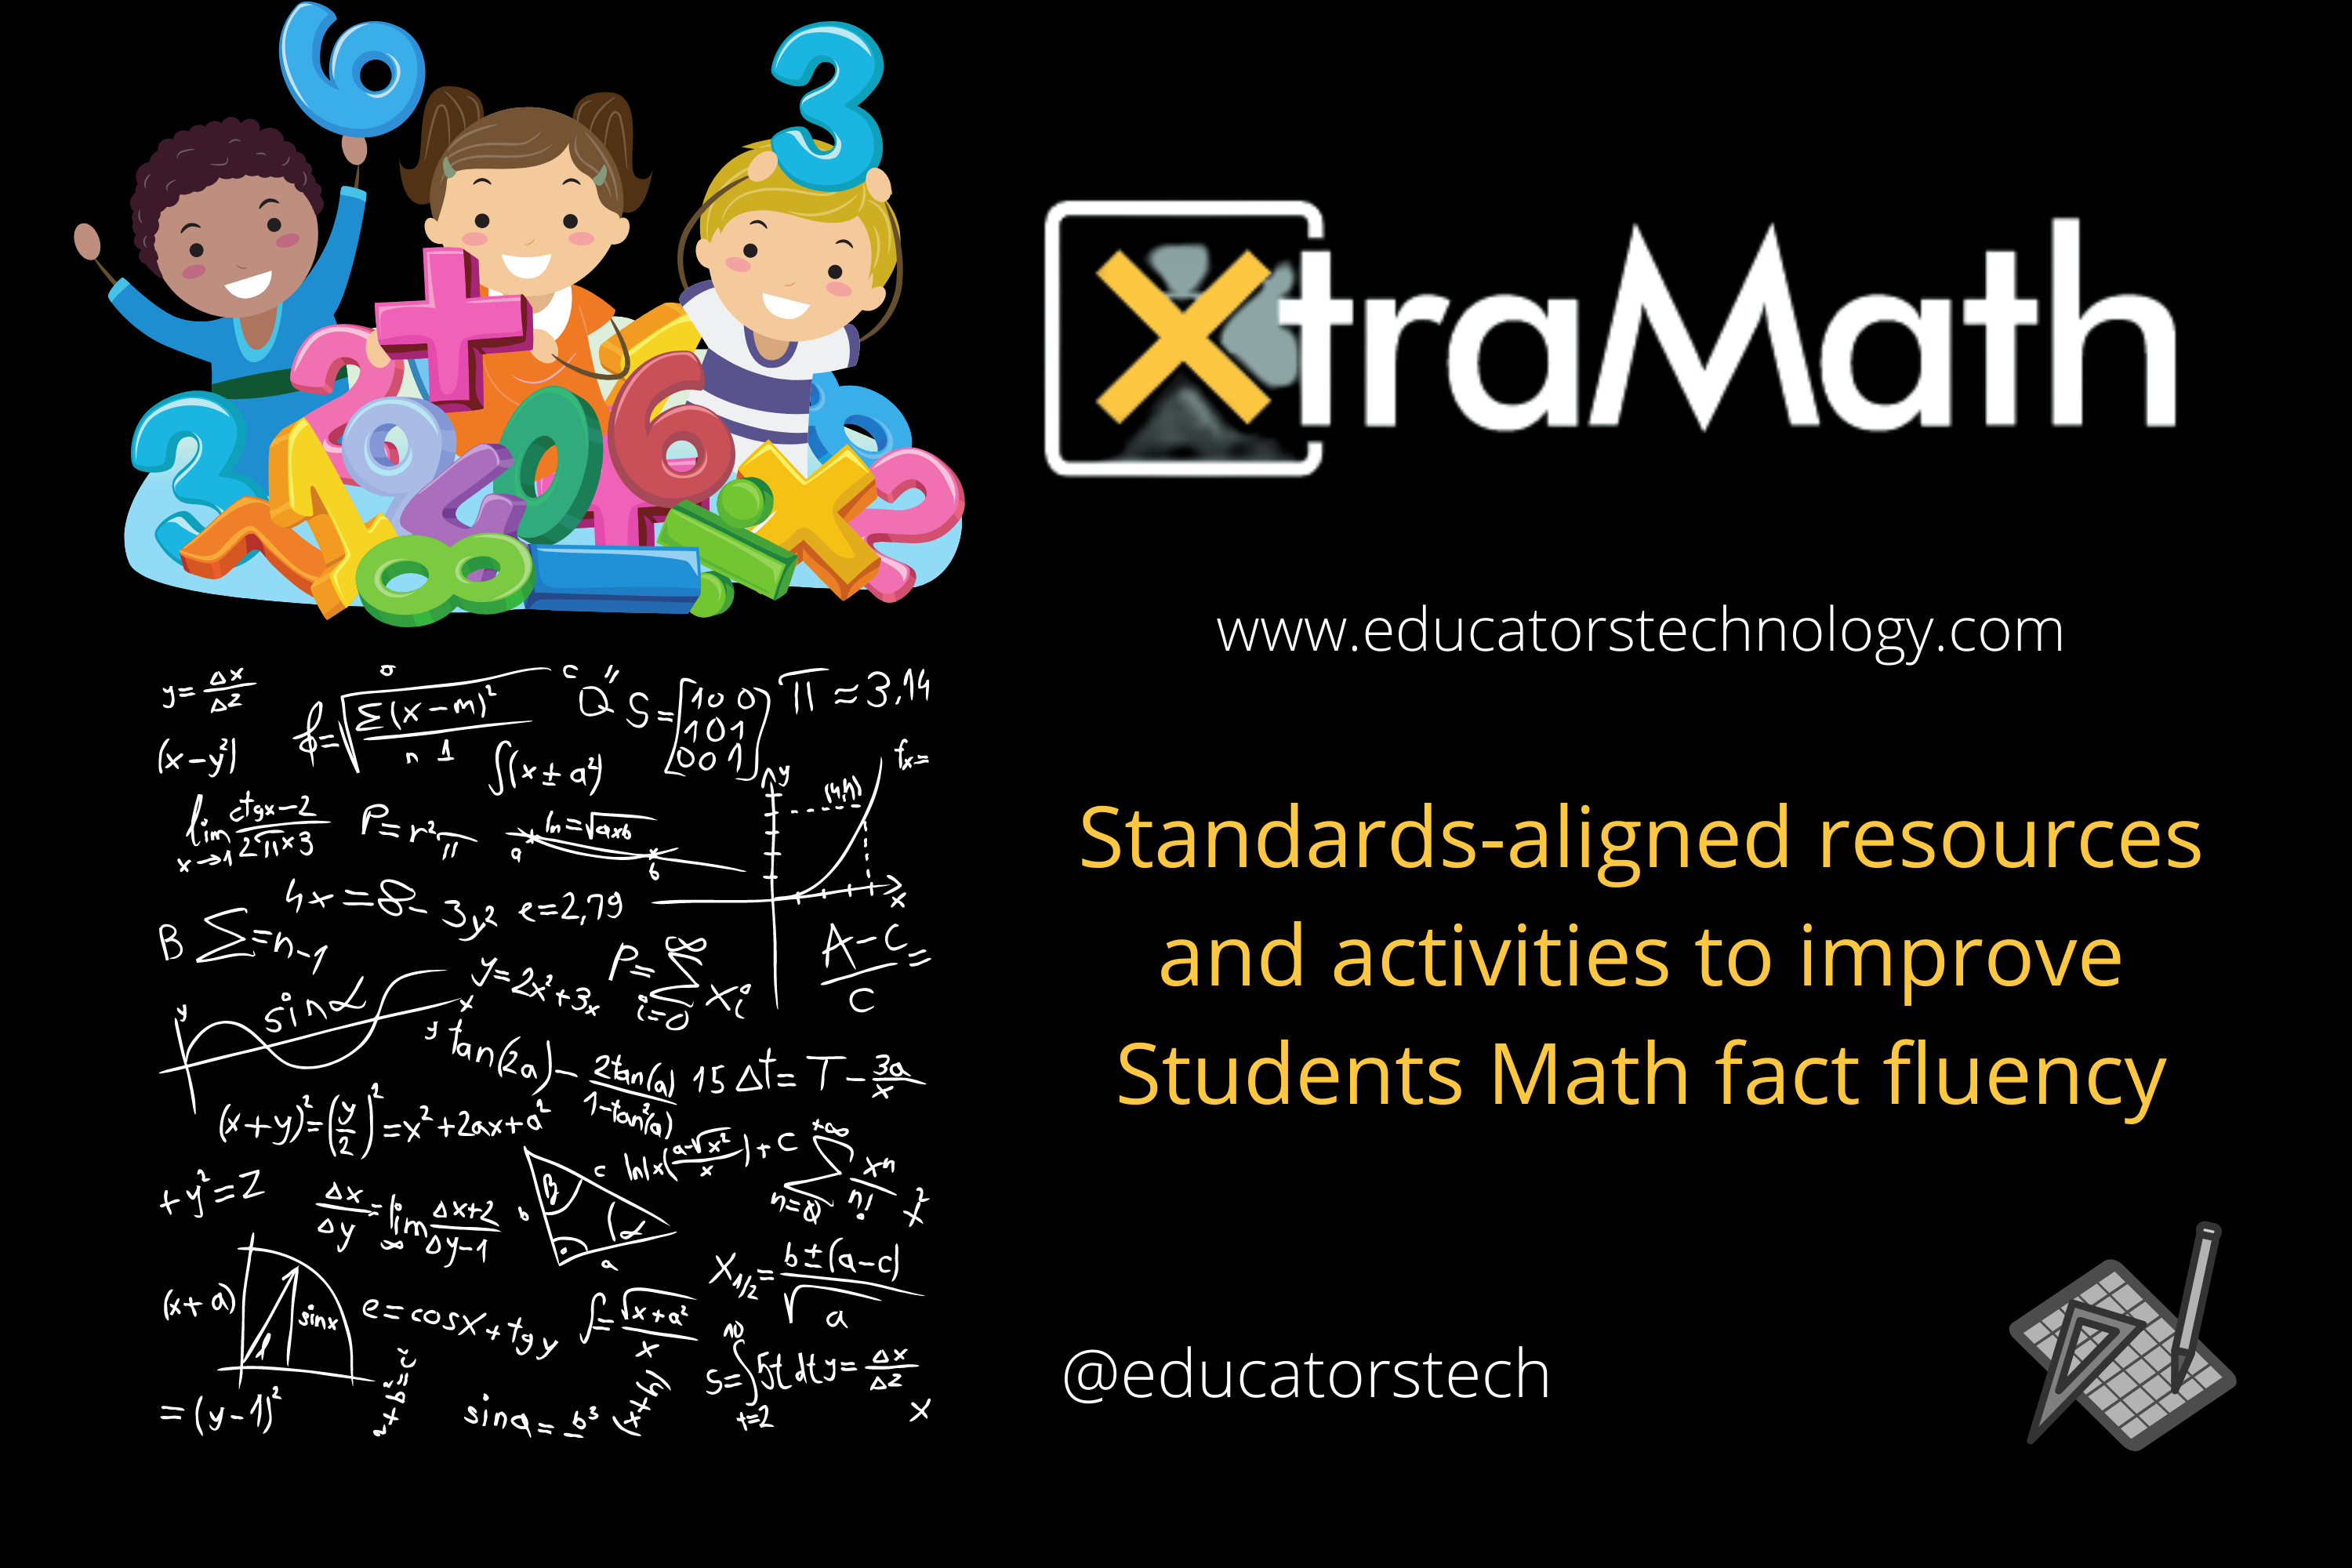 XtraMath review for teachers